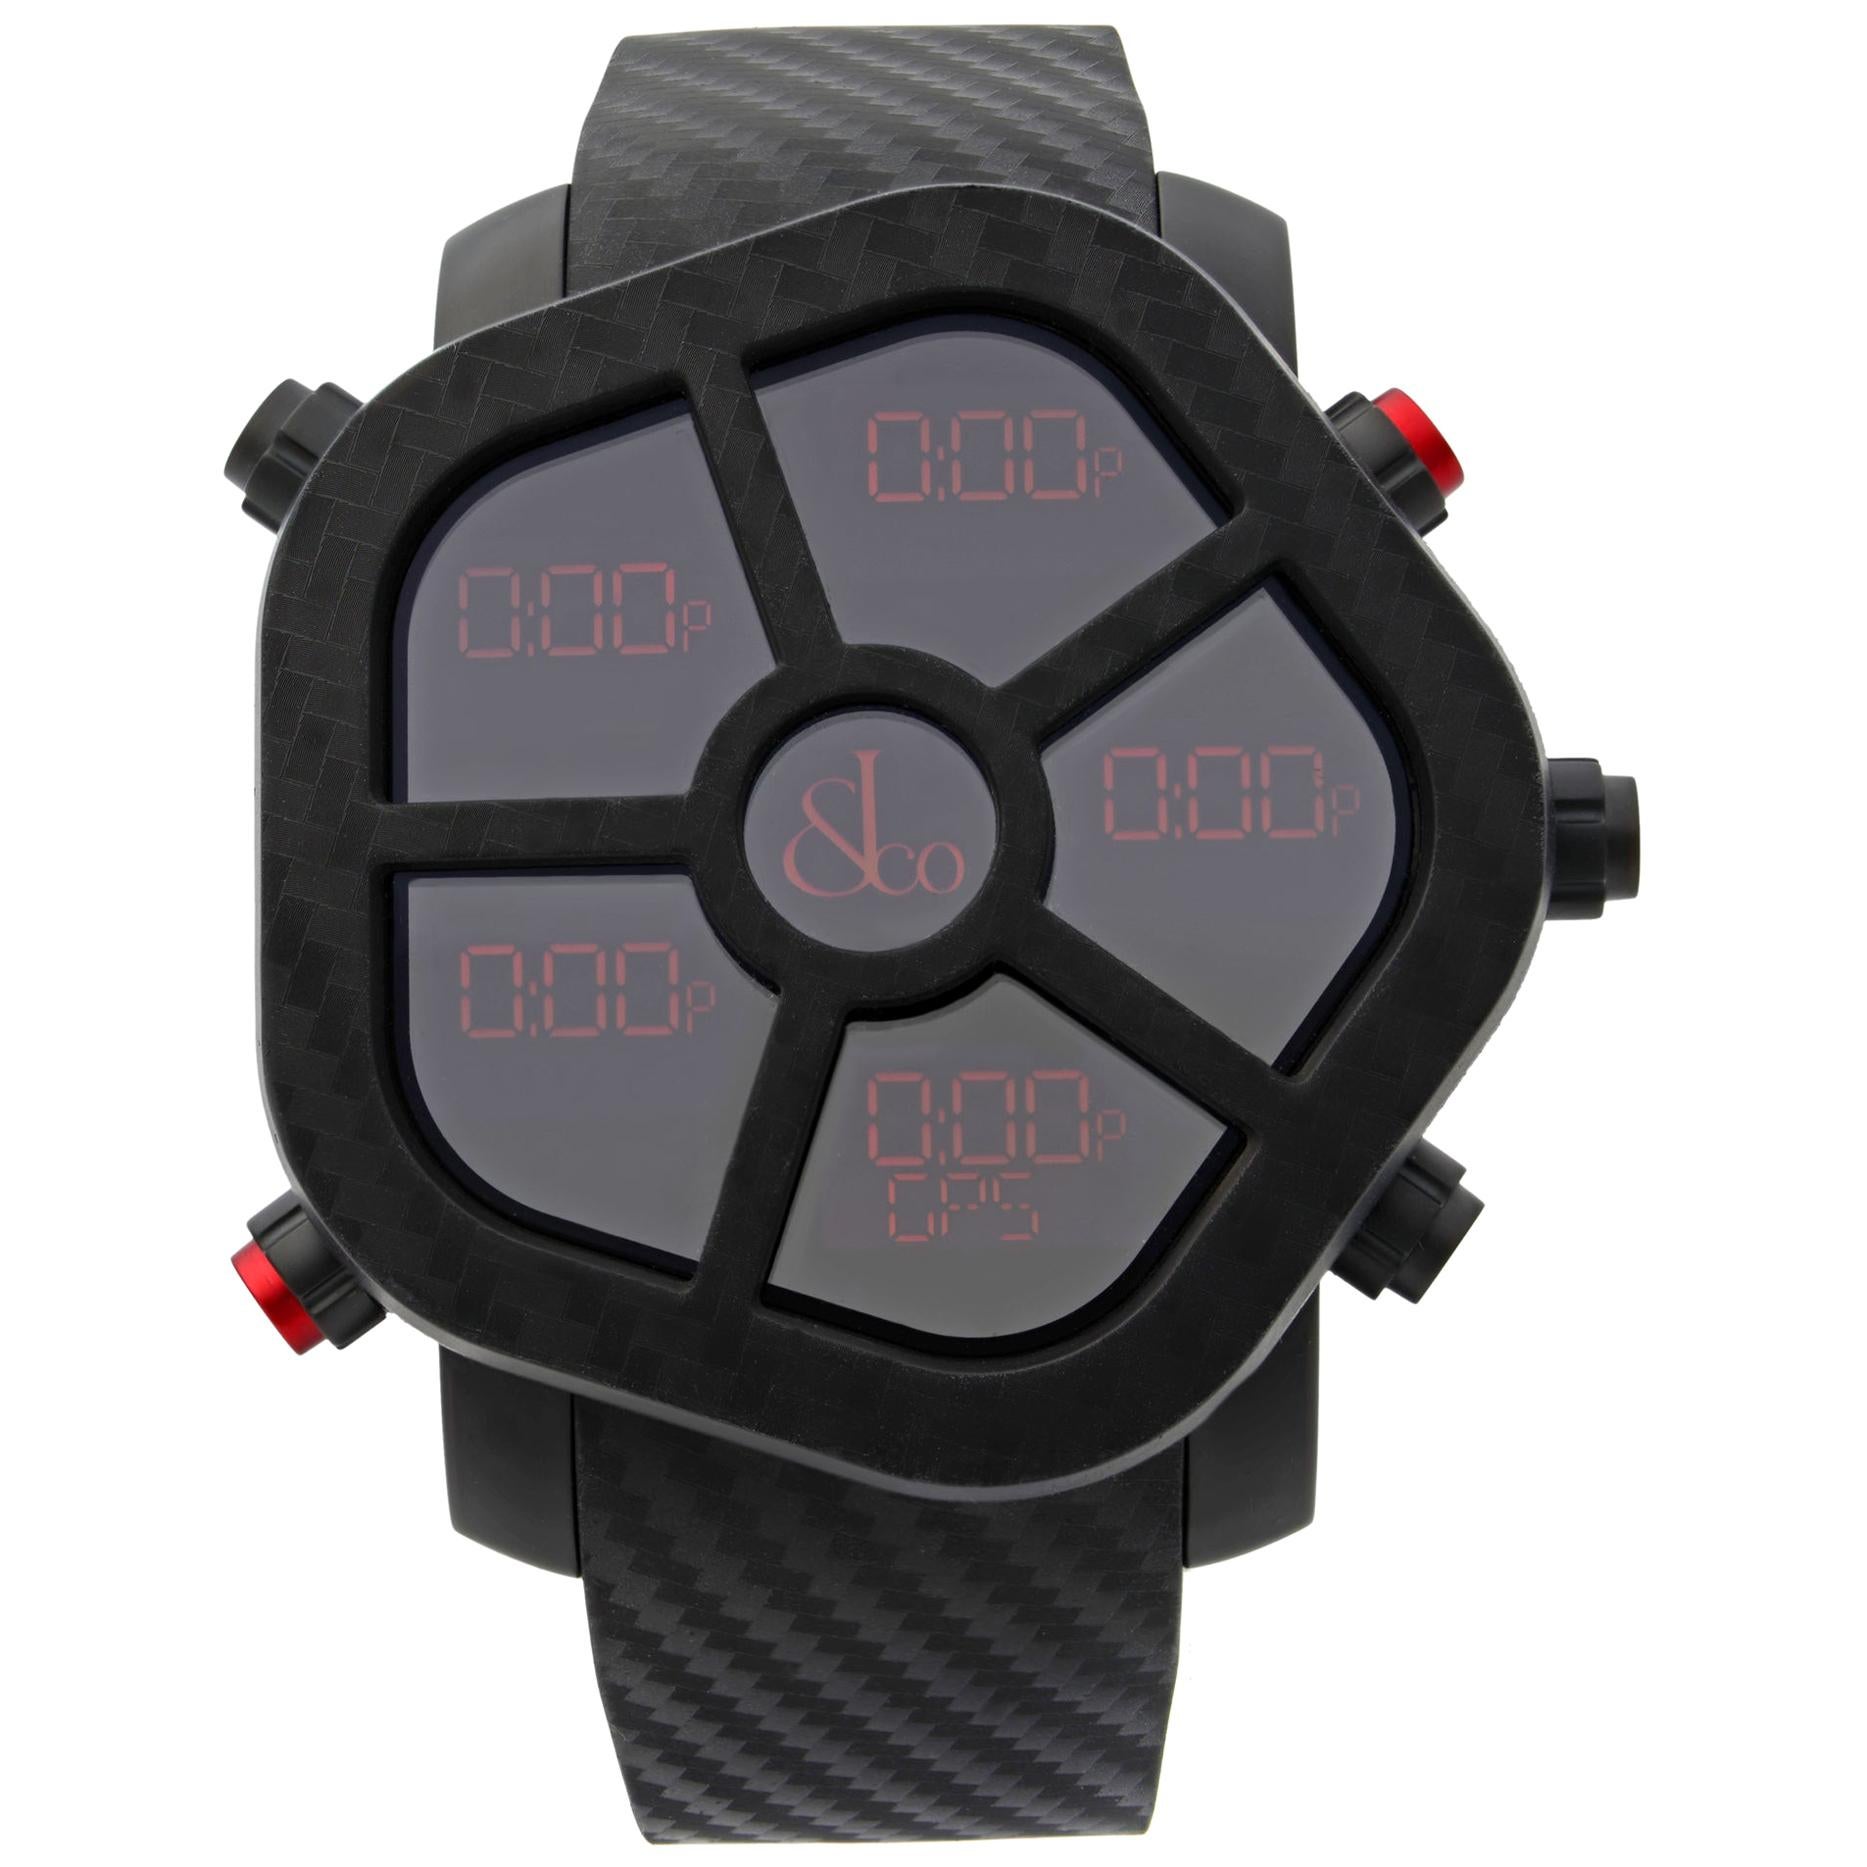 Jacob & Co. Ghost Carbon Bezel Black Quartz Men’s Watch GH100.11.NS.PC.ANA4D